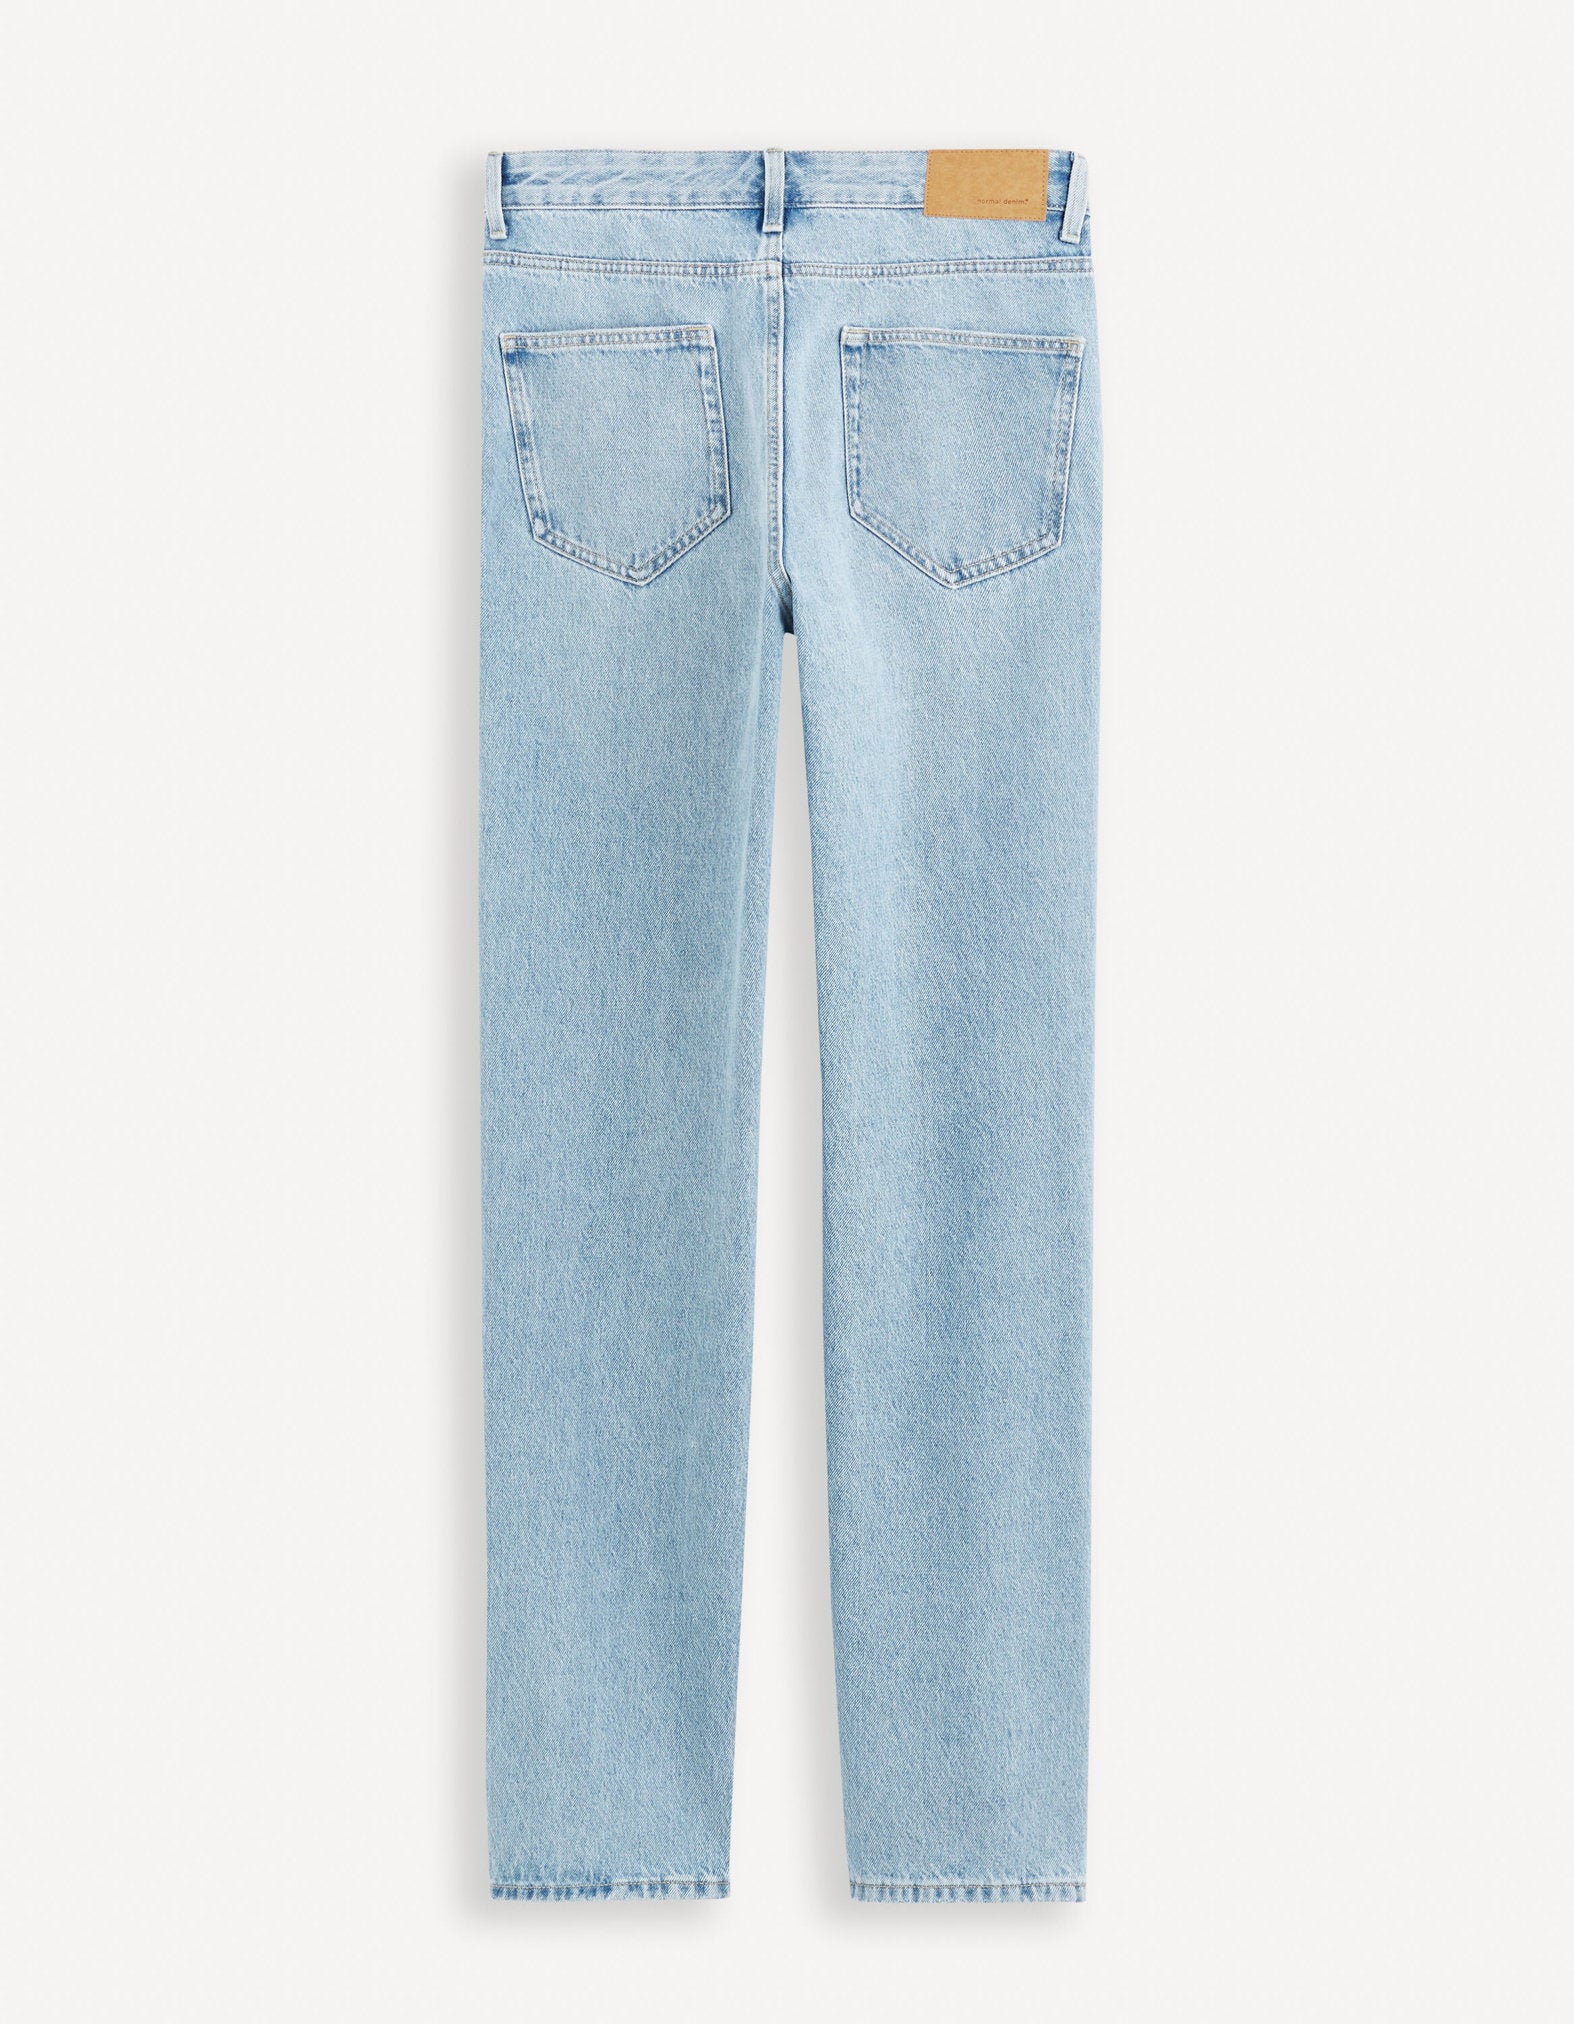 C75 Loose Jeans 100% Cotton_FOLOOSE_BLEACHED_06